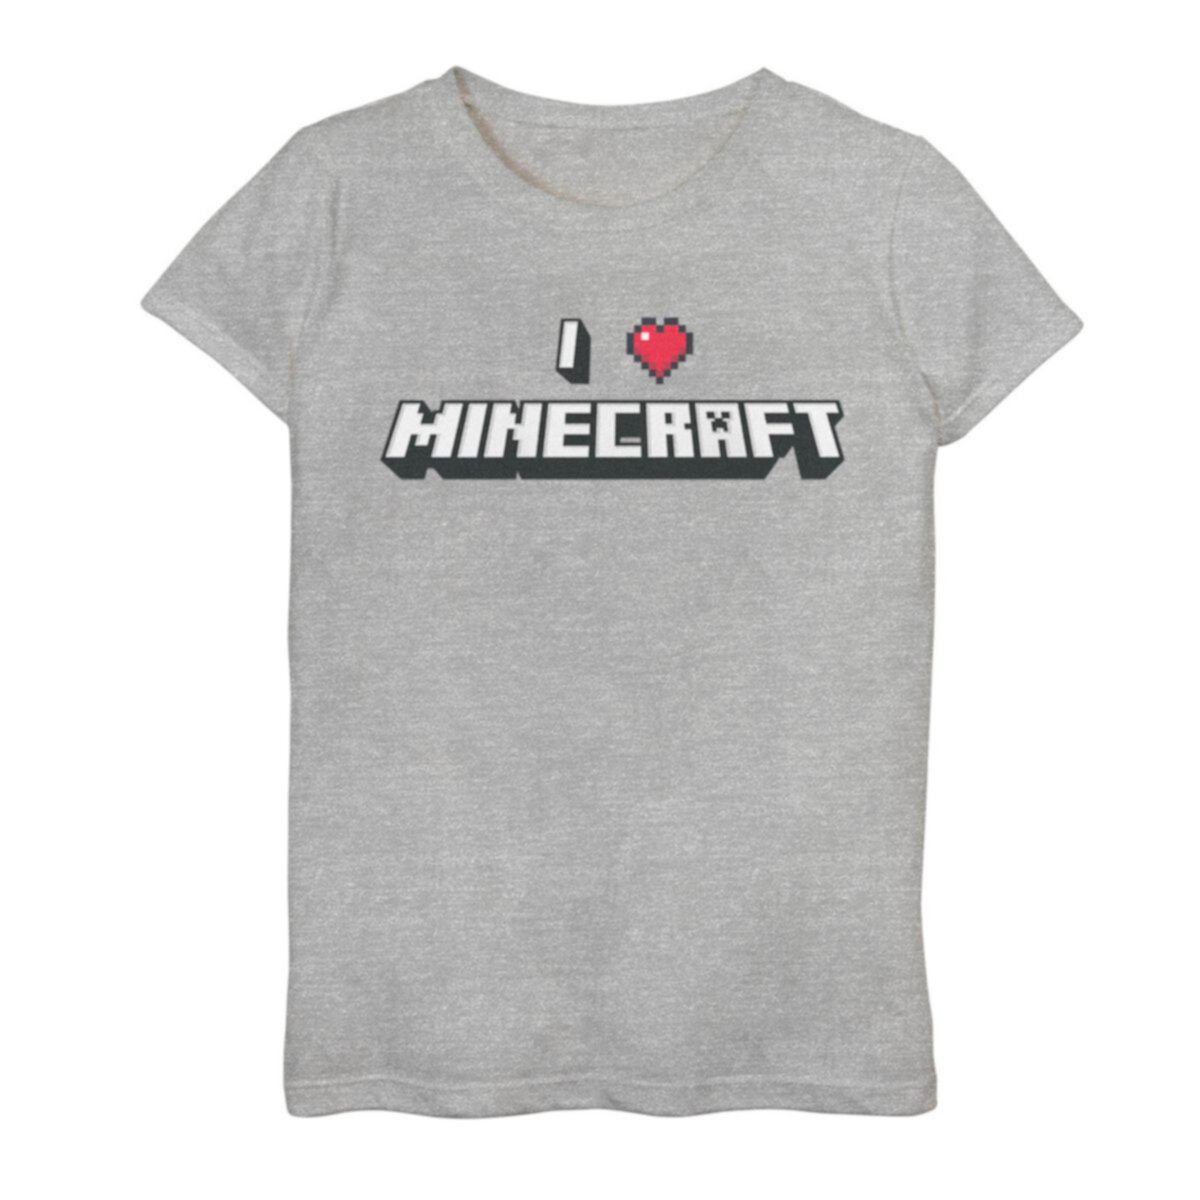 Футболка Minecraft I Love Minecraft для девочек 7–16 лет с графическим рисунком и текстом Minecraft